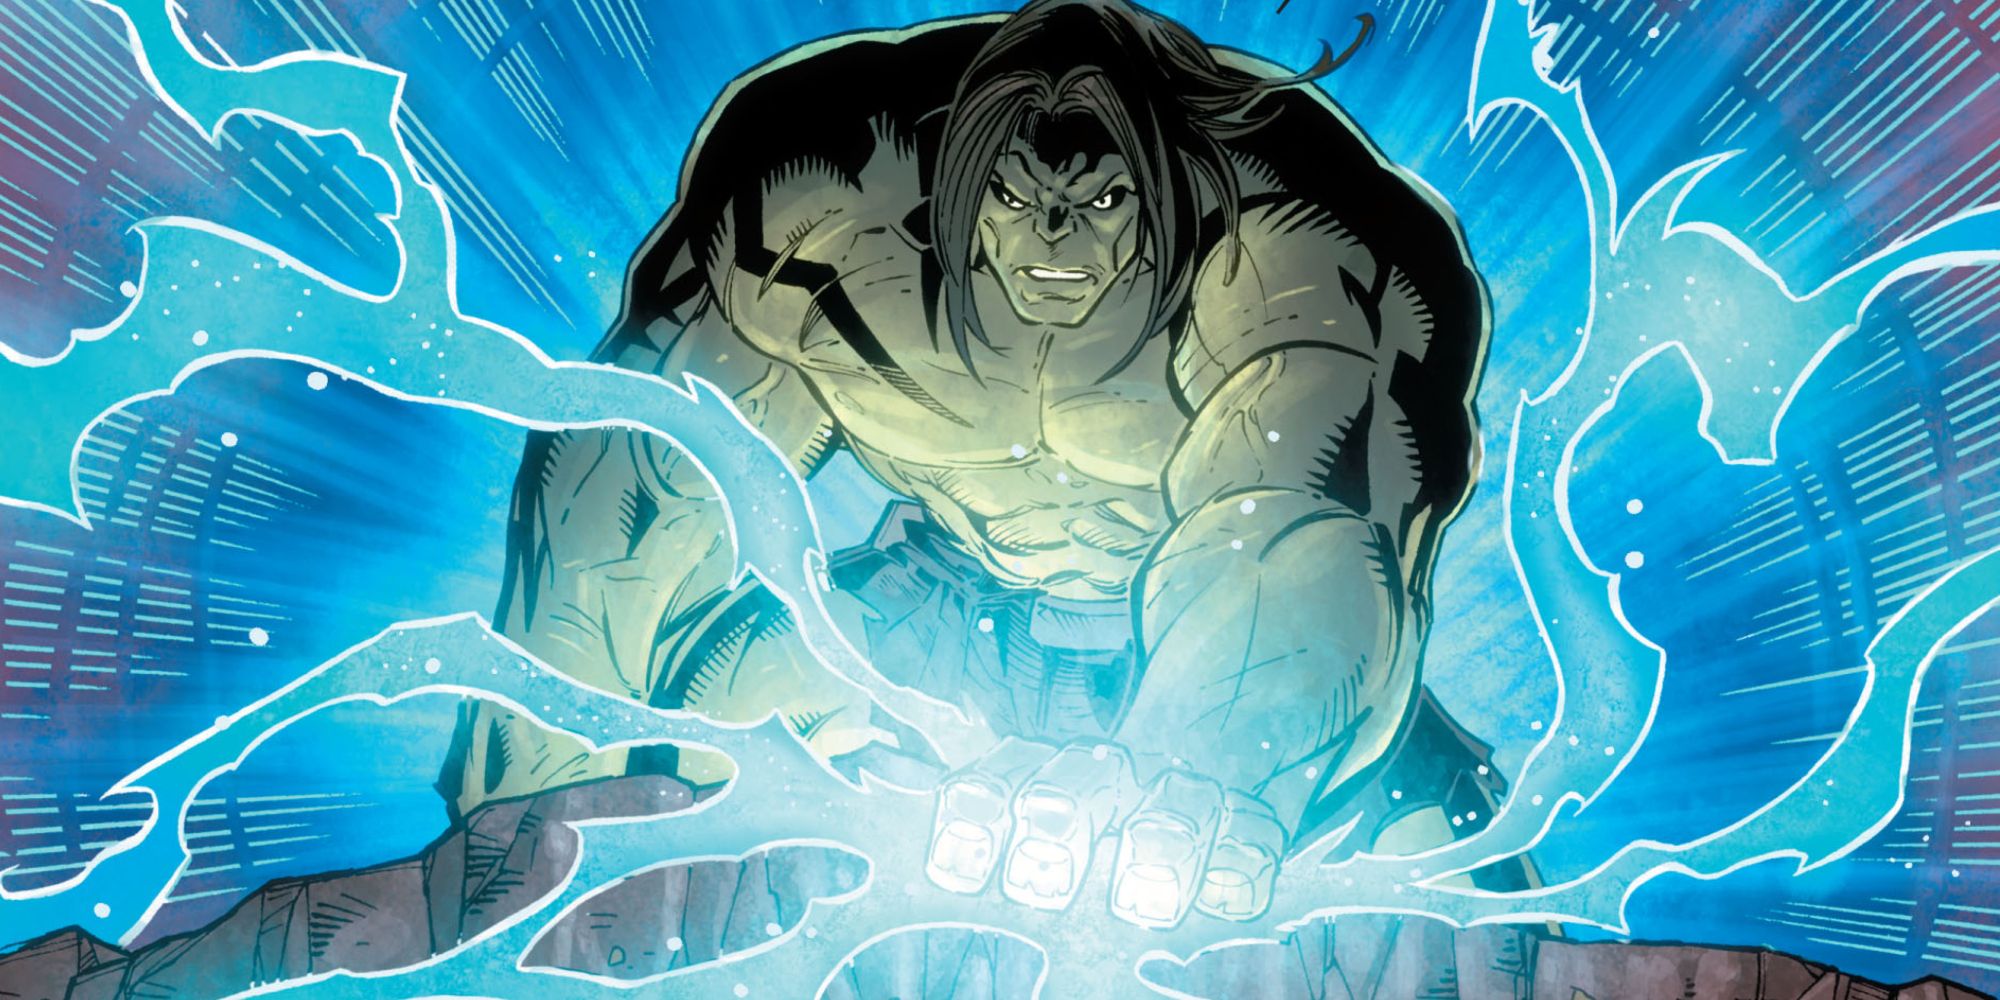 Skaar uses the Old Power in Marvel Comics.